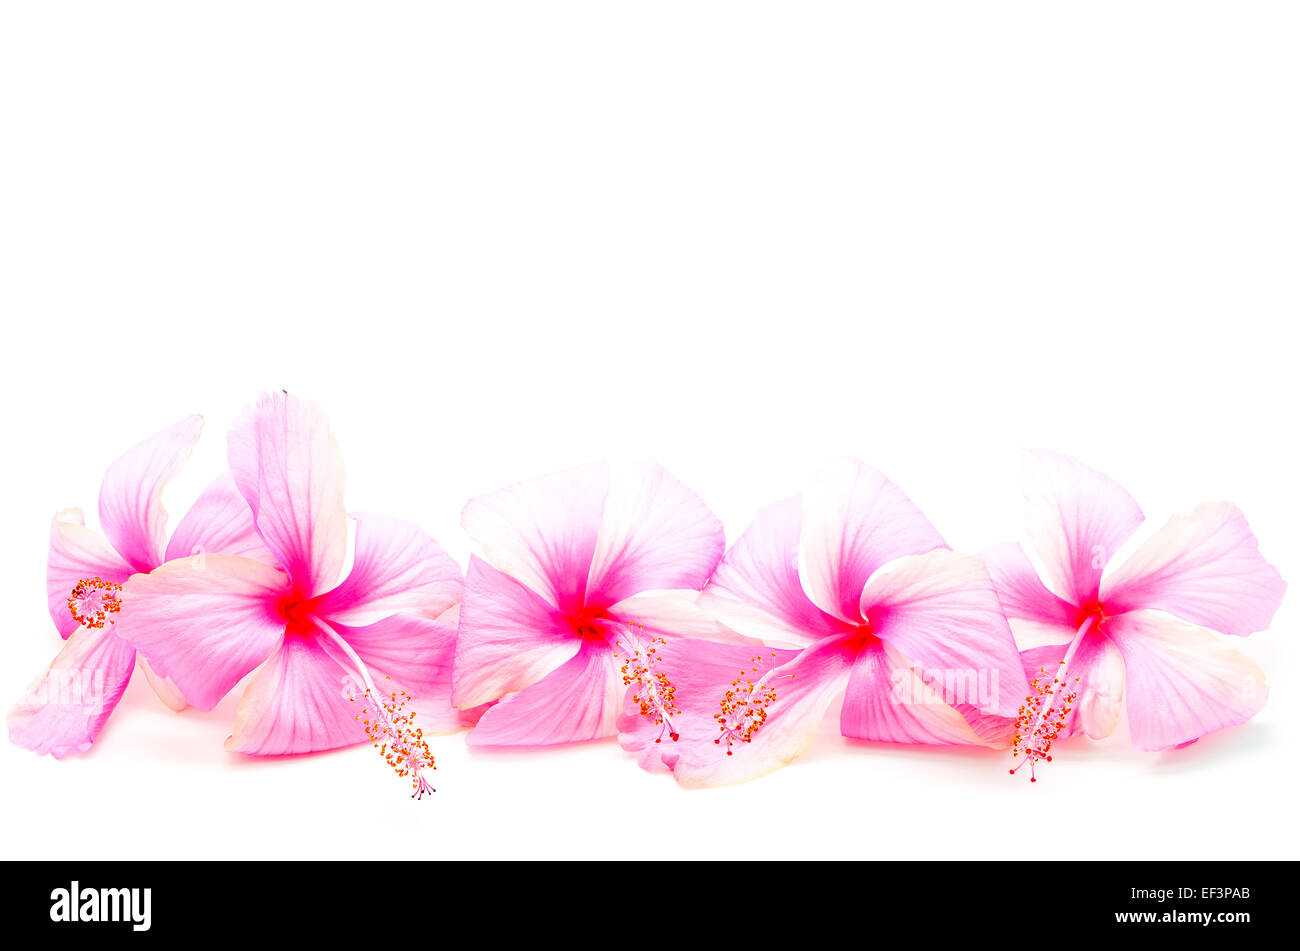 Di un bel colore rosa fiori di ibisco, isolato su sfondo bianco Foto Stock